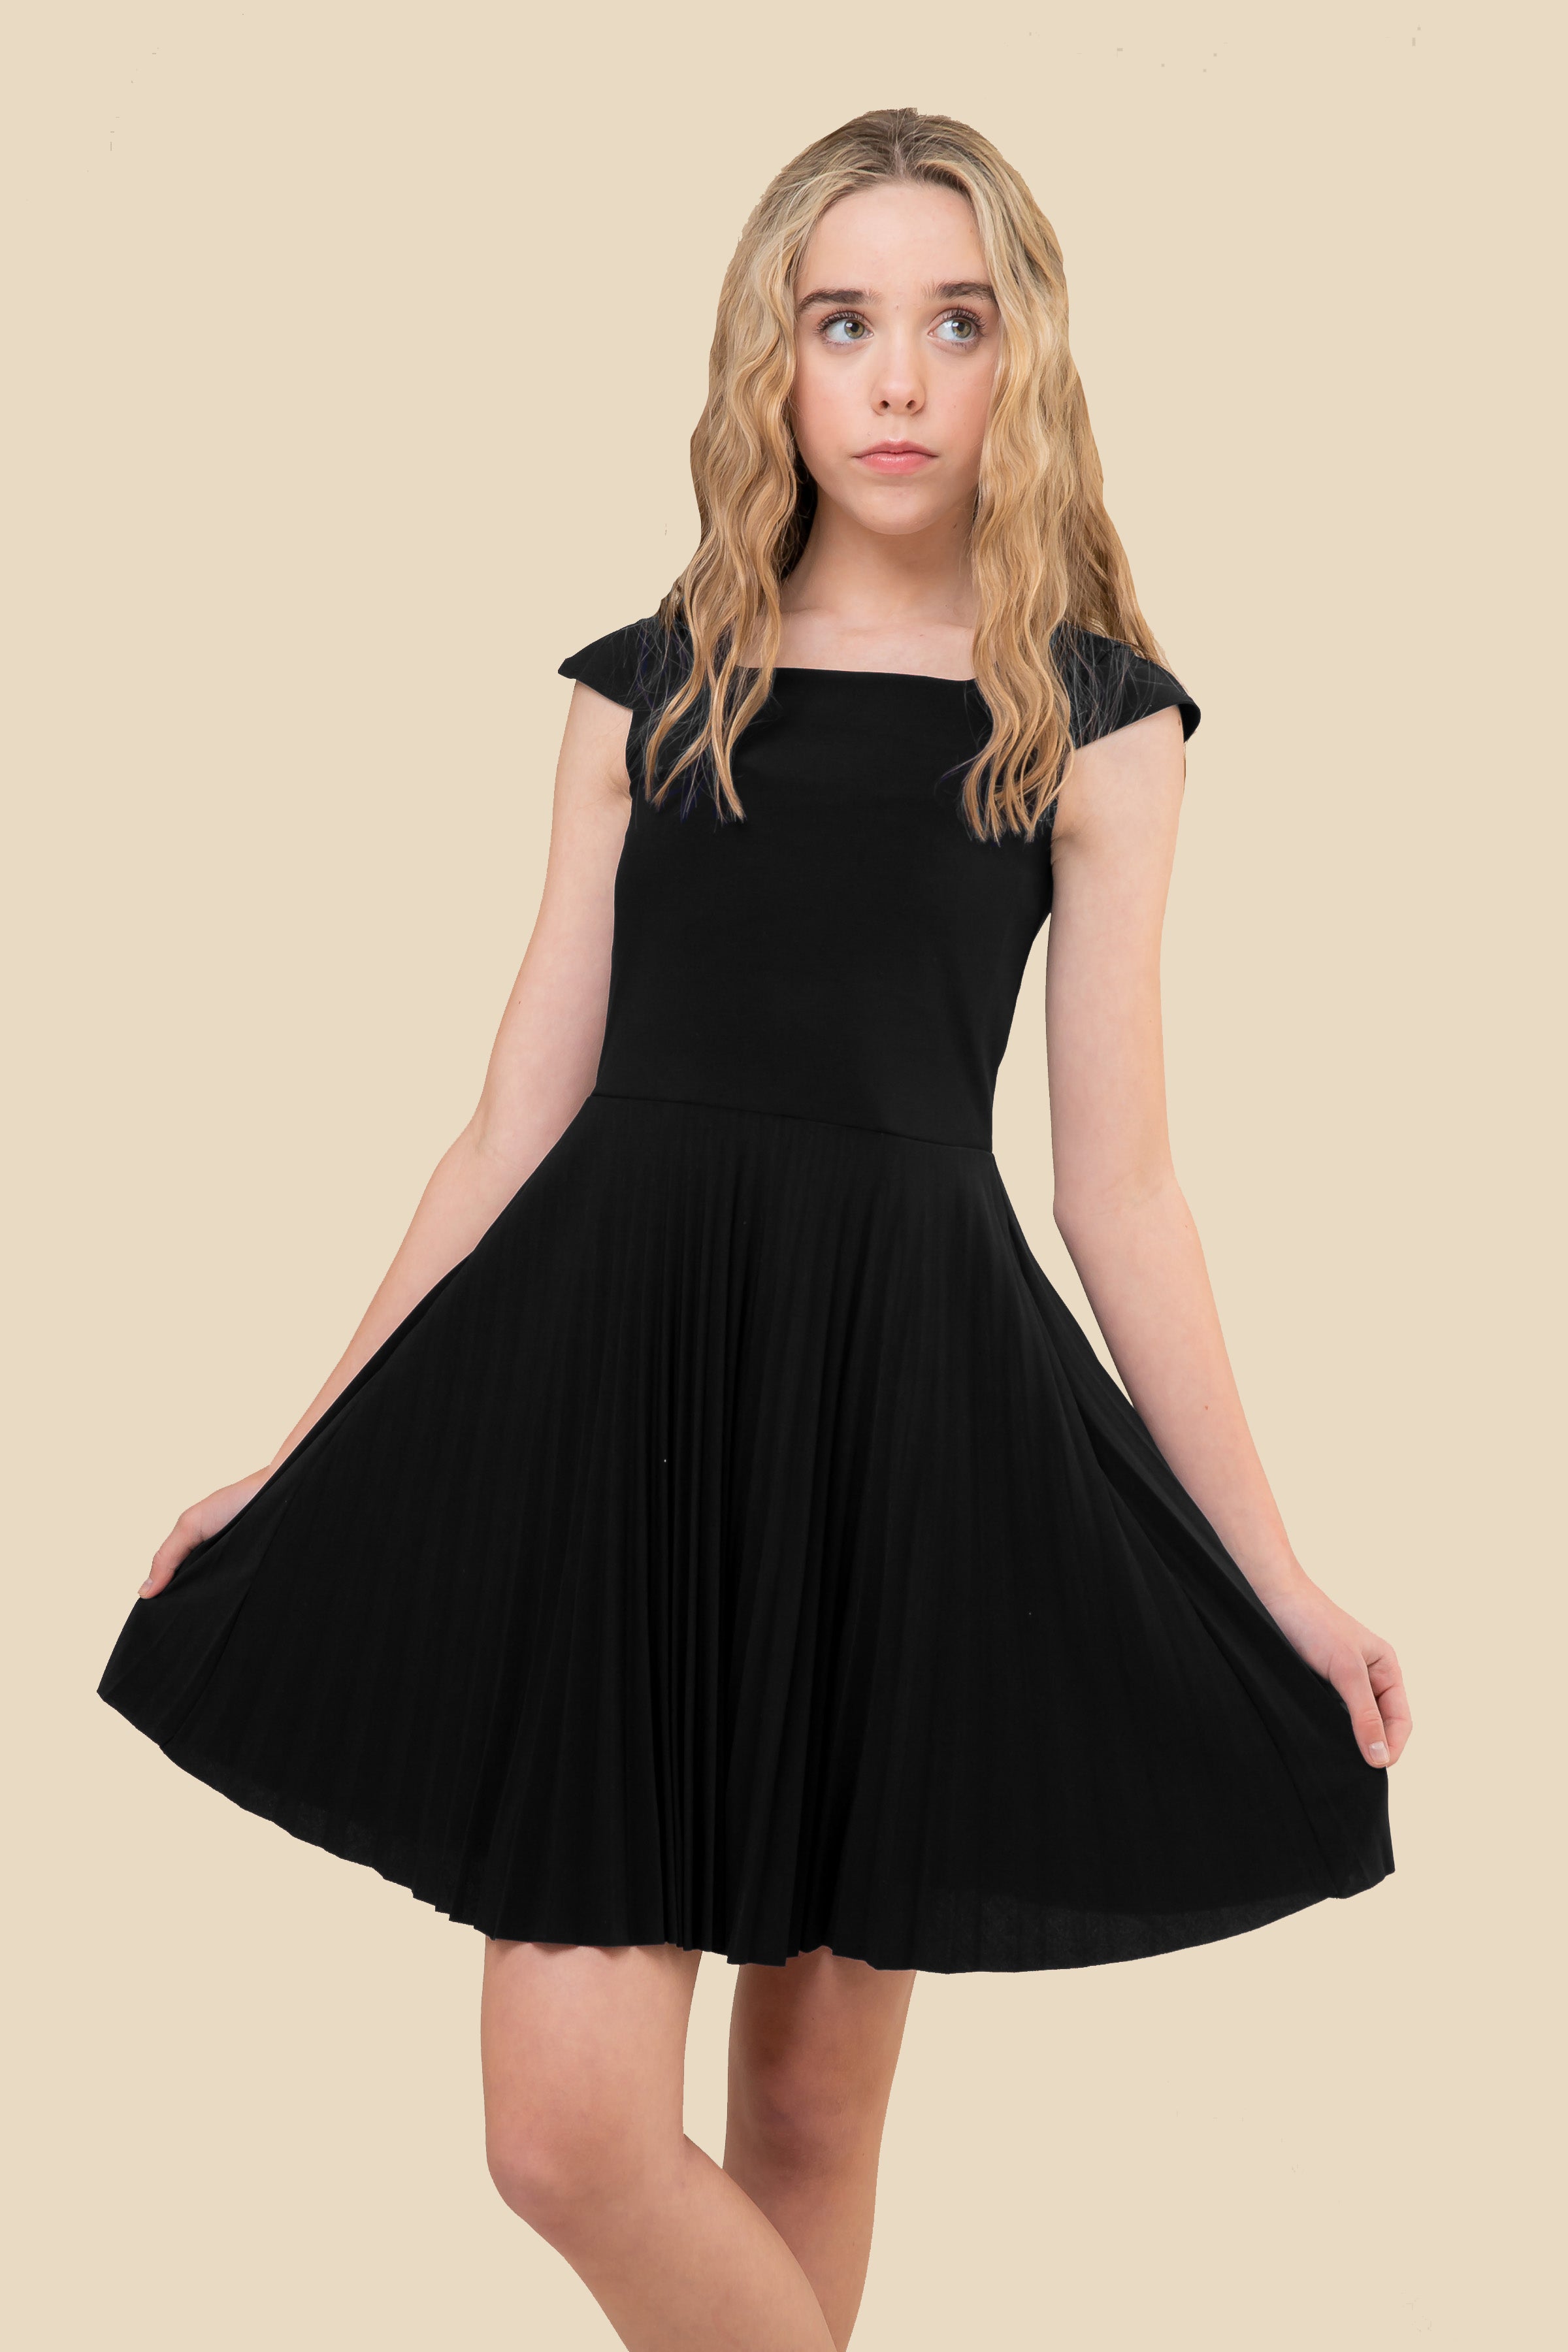 Halter Dress in Black – Udtfashion